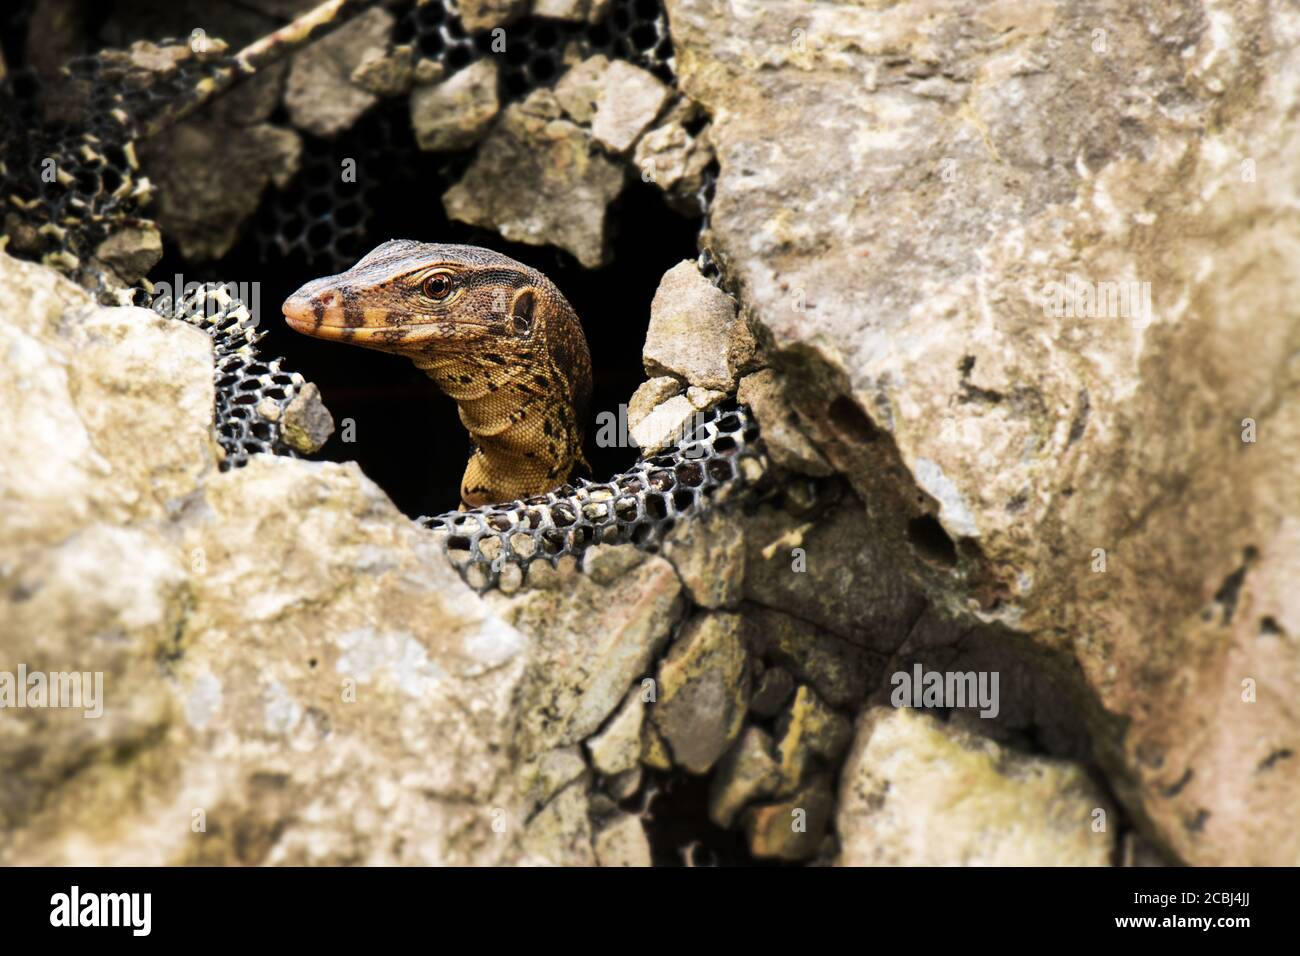 Water monitor lizard in the stone, Varanus salvator, Thailand, Asia Stock Photo